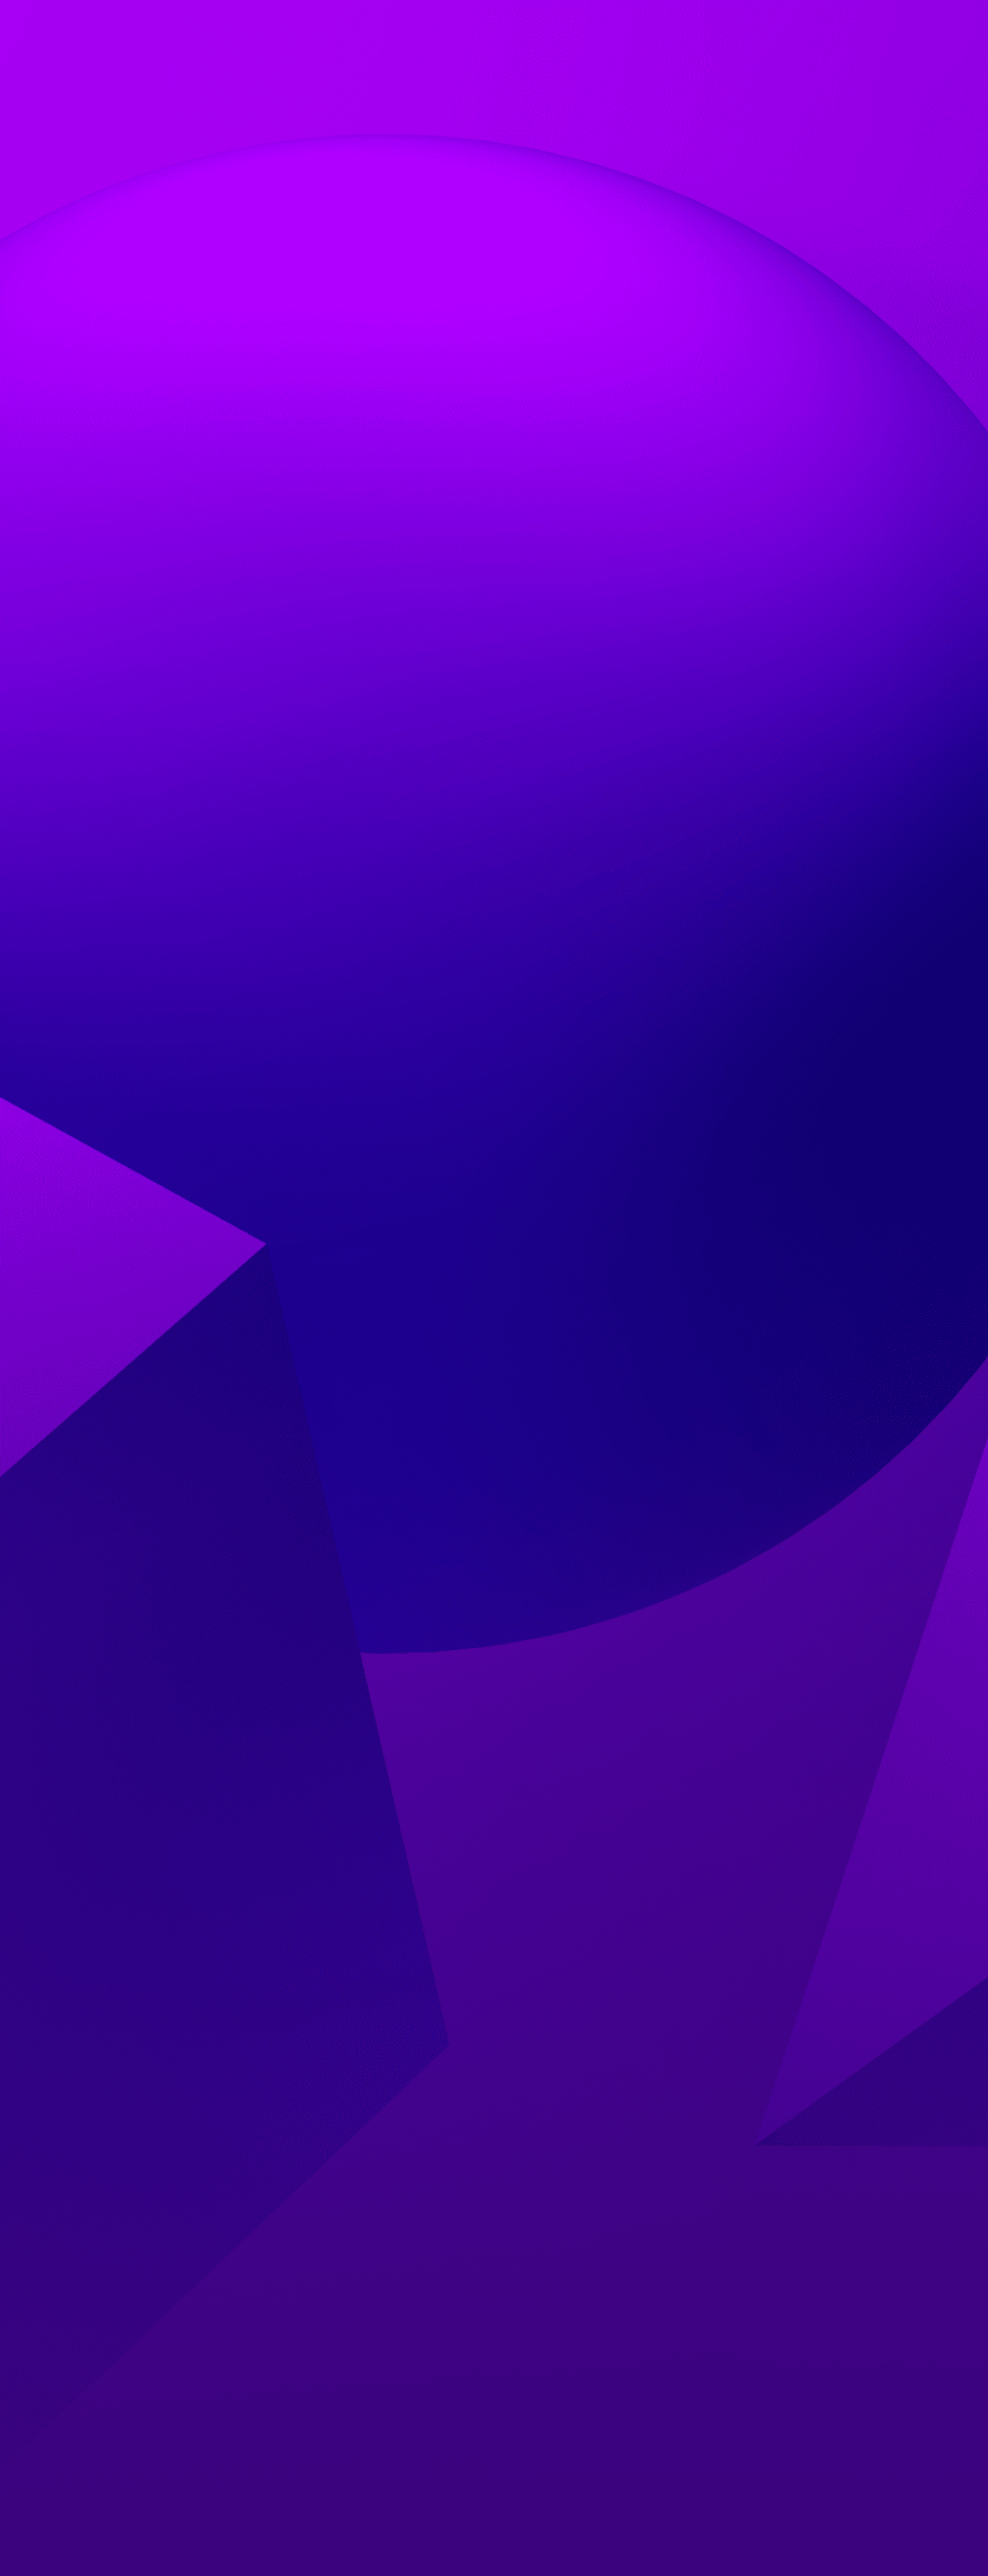 Latar belakang ungu bertekstur dengan 3 bentuk - bola, kerucut, dan kubus